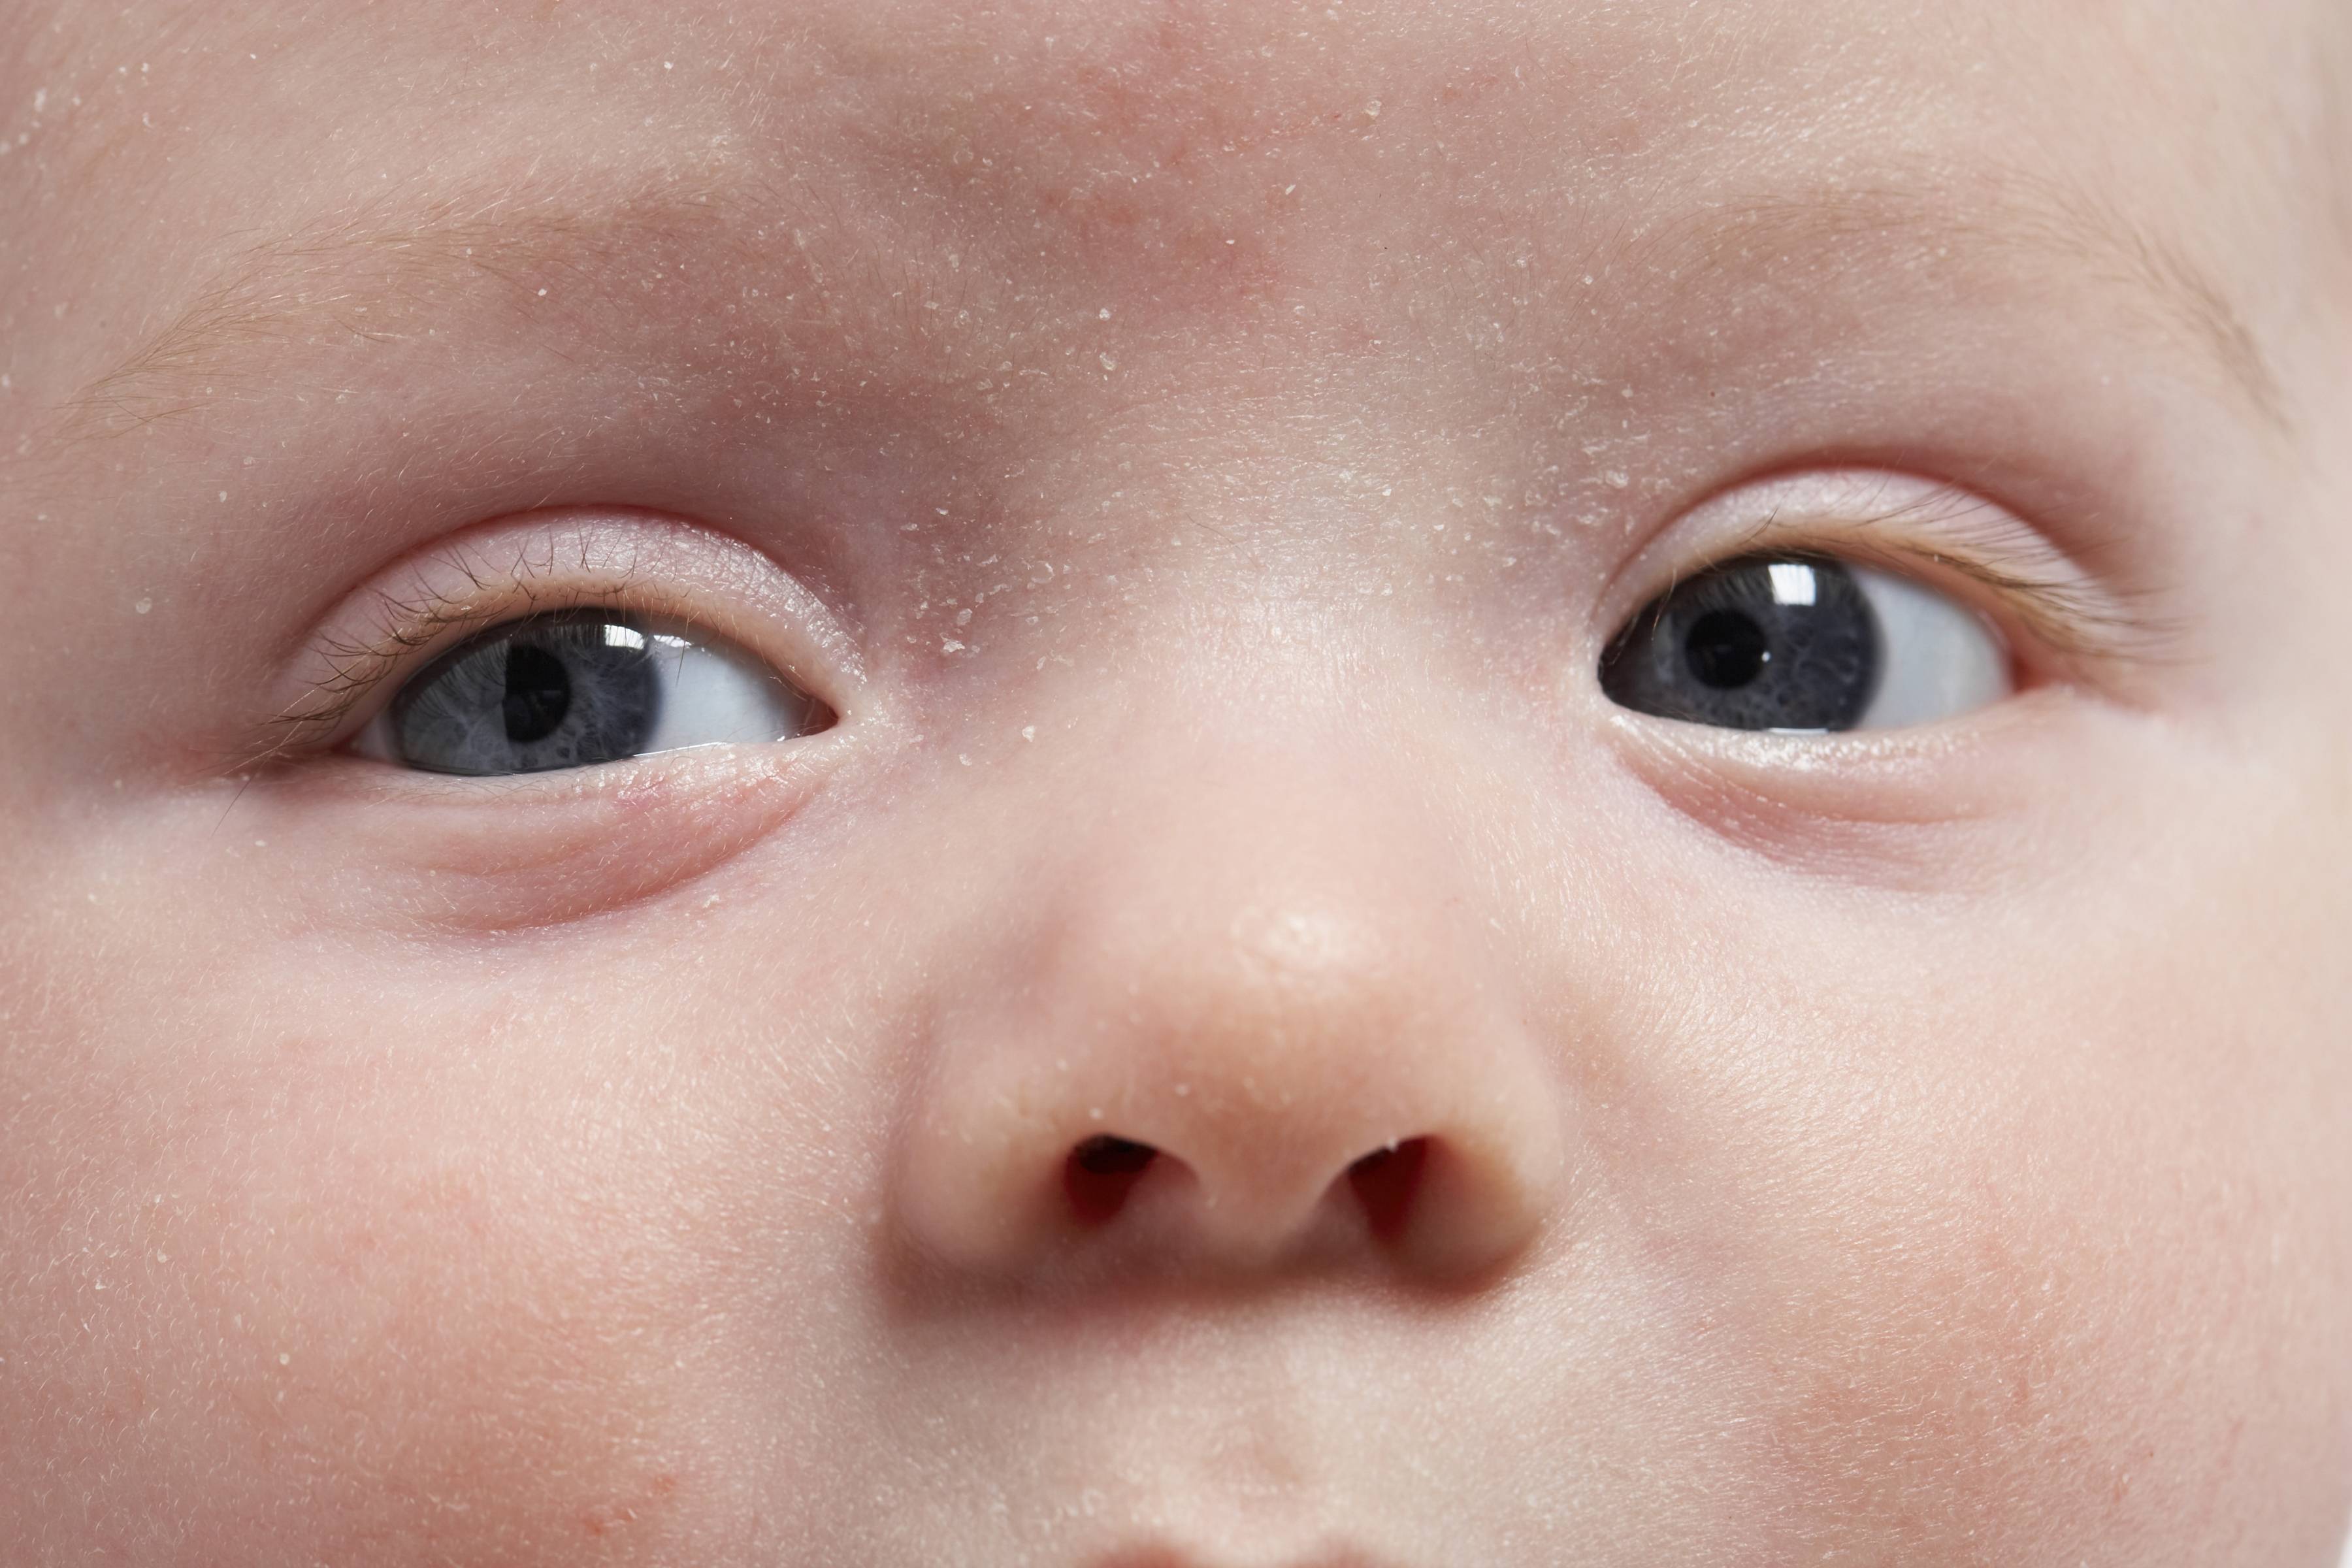 Аллергия на подгузники: как выглядит и что делать | сыпь и покраснения под подгузником у ребенка